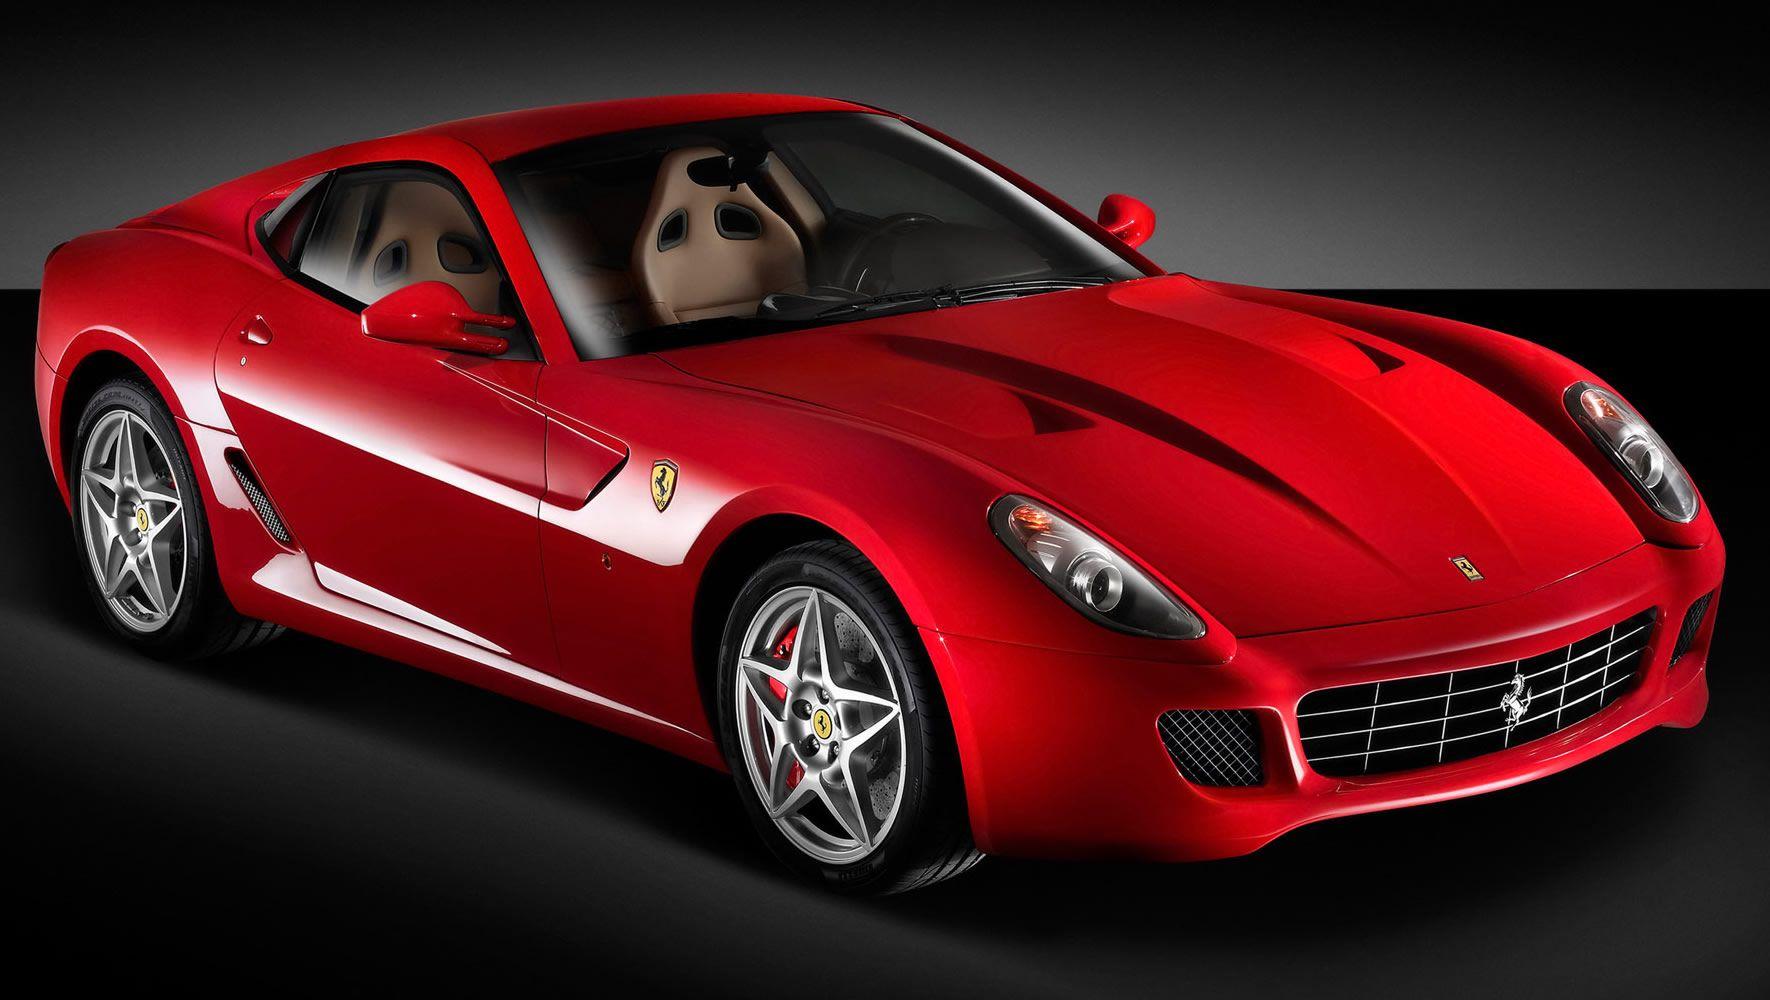 Download wallpaper: red car Ferrari, red car, wallpaper, download